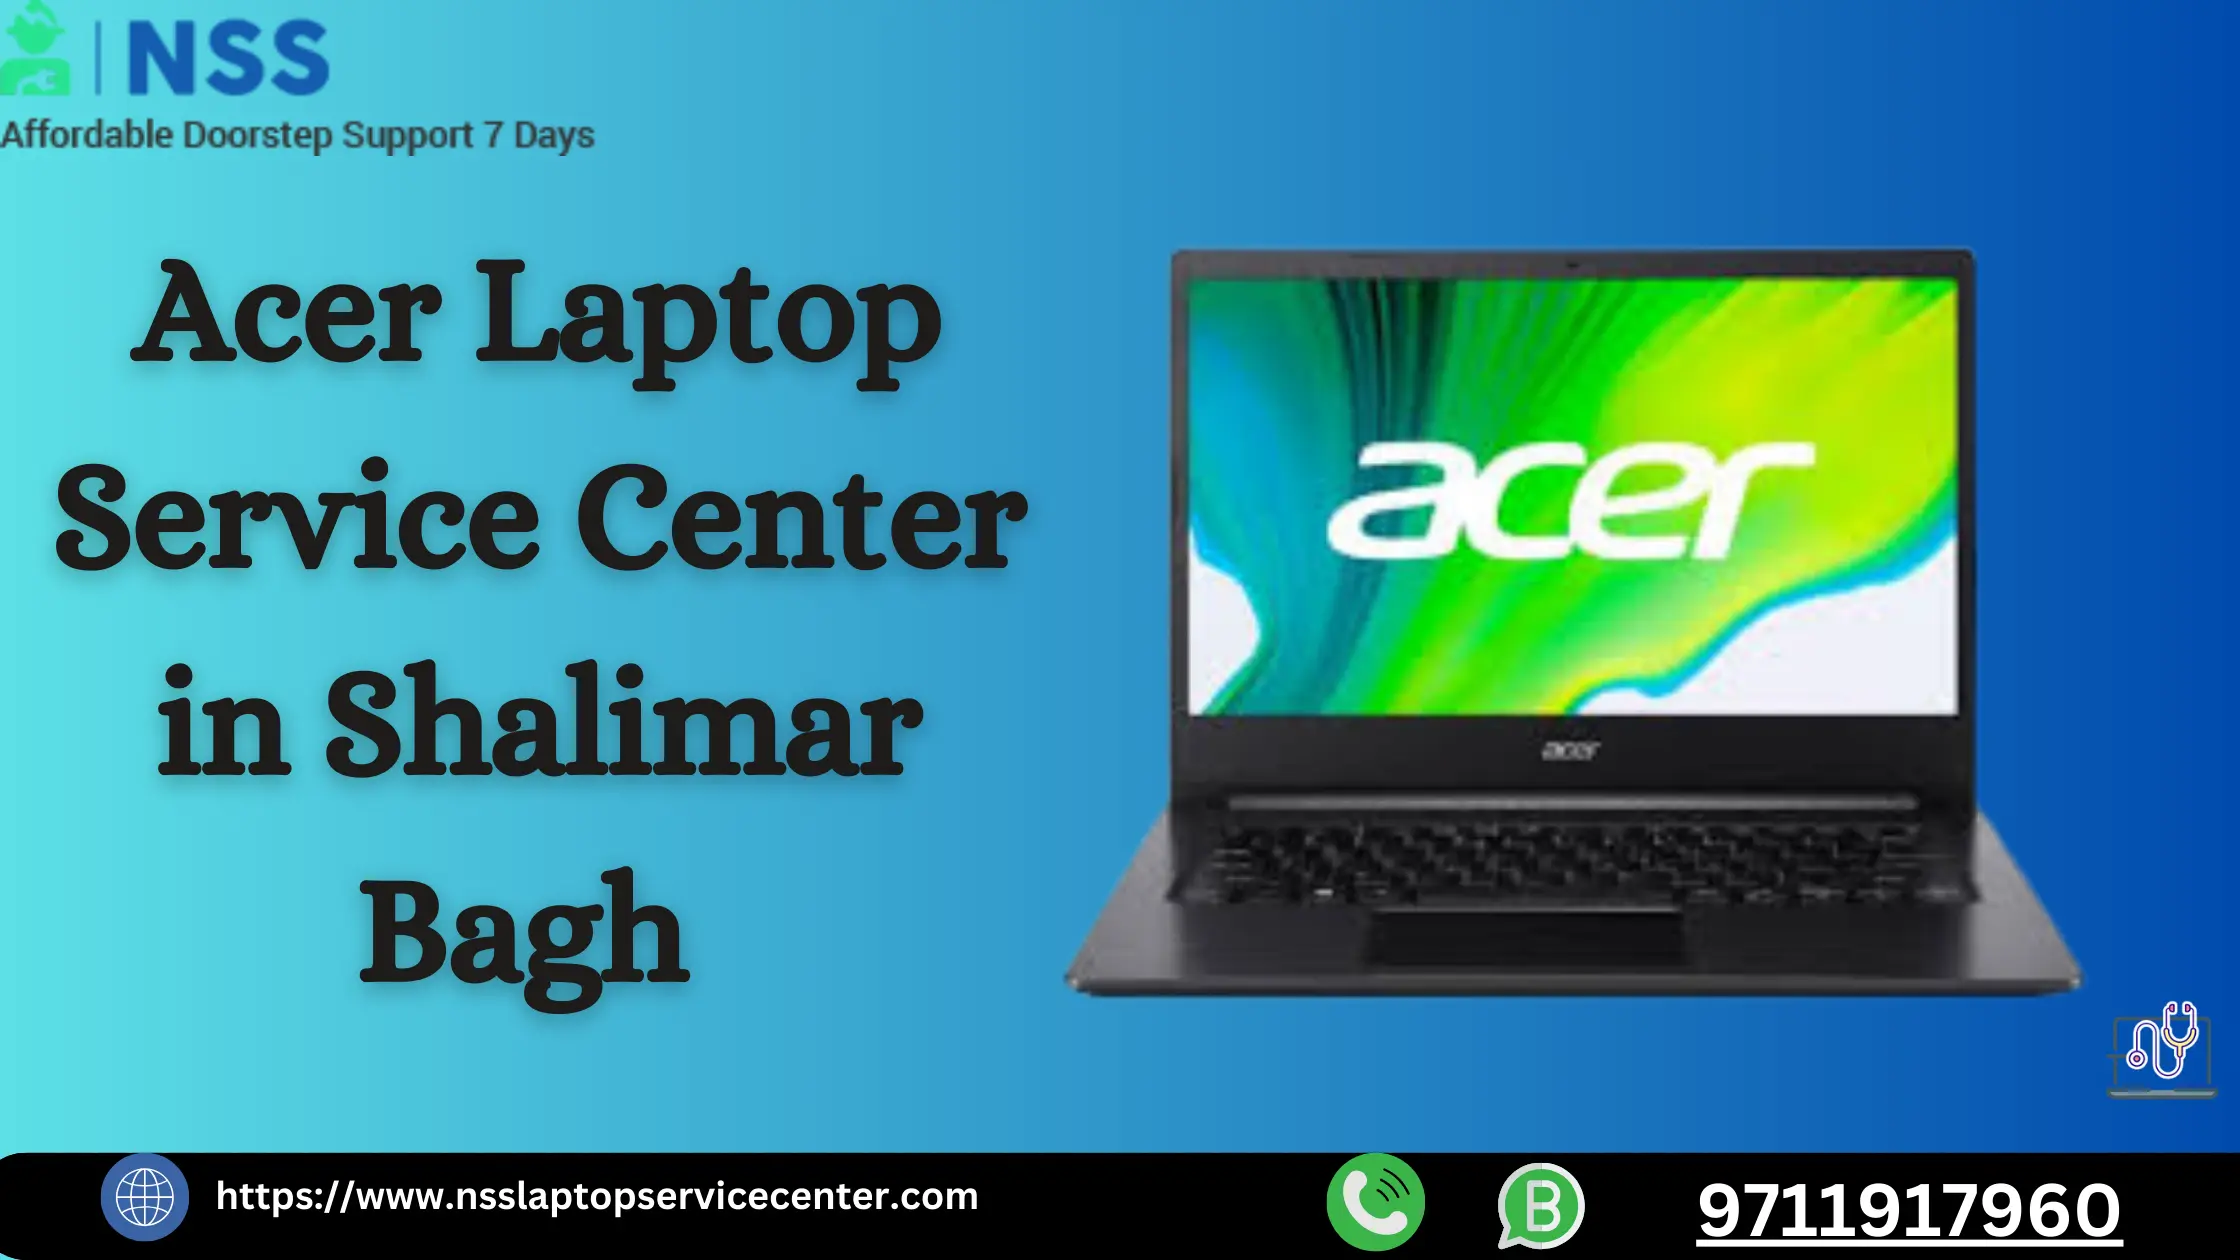 Acer Laptop Service Center in Shalimar Bagh Near Delhi